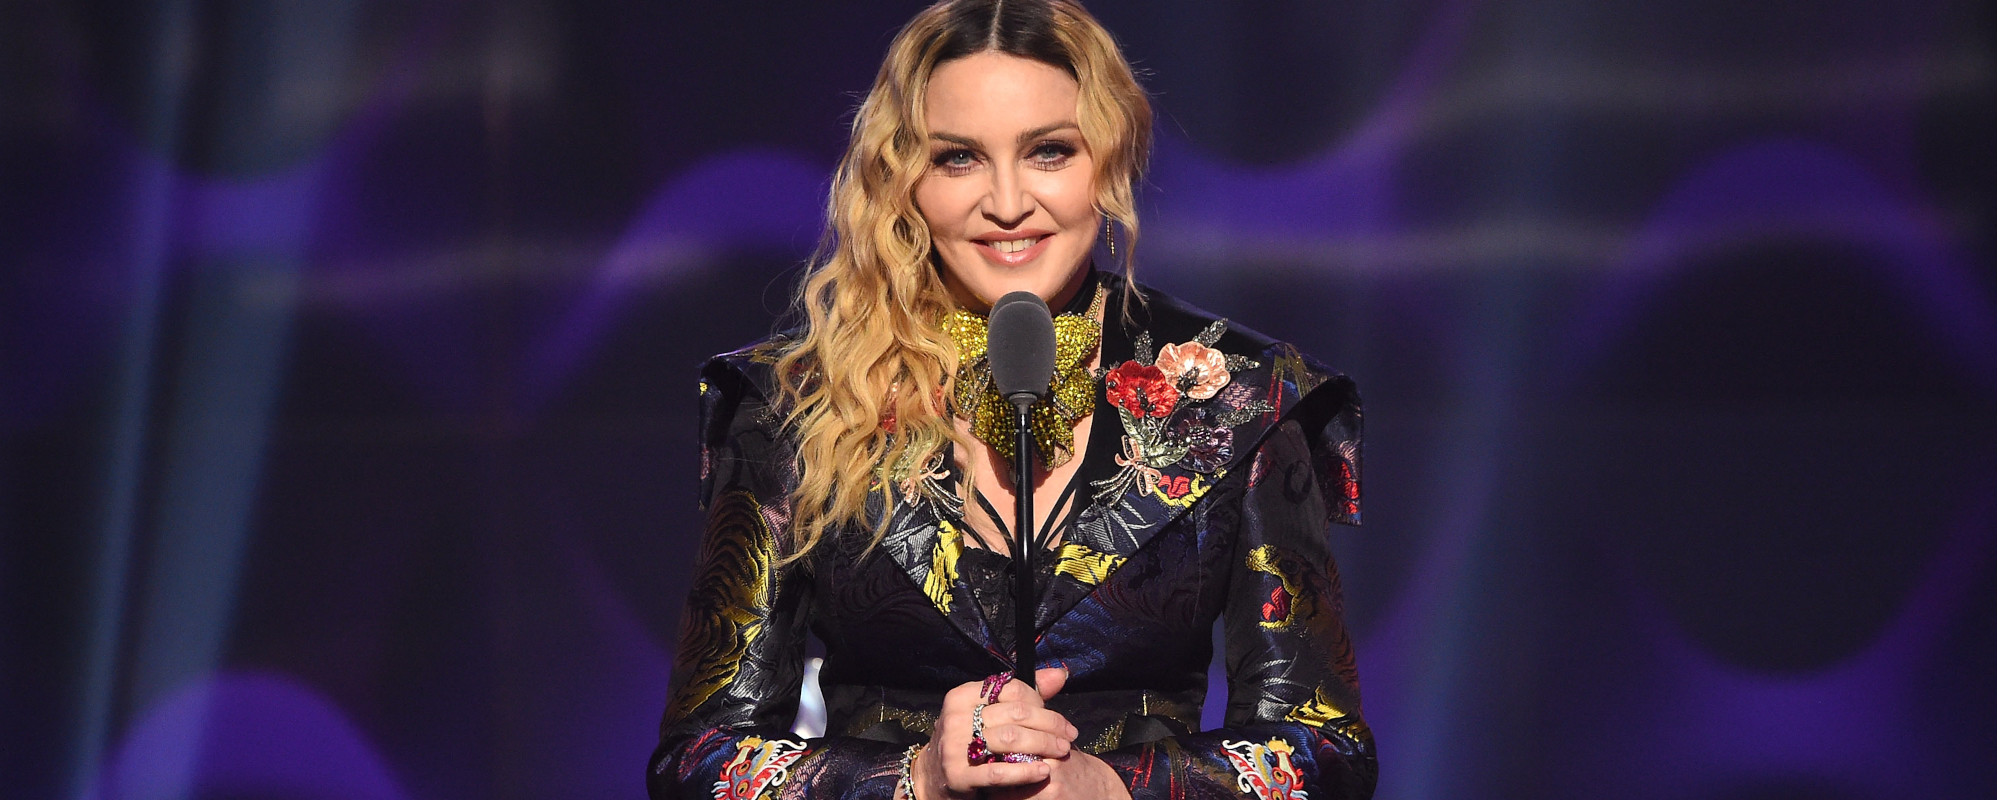 Madonna Apologizes to Toronto Crowd After “Hello, Boston” Flub